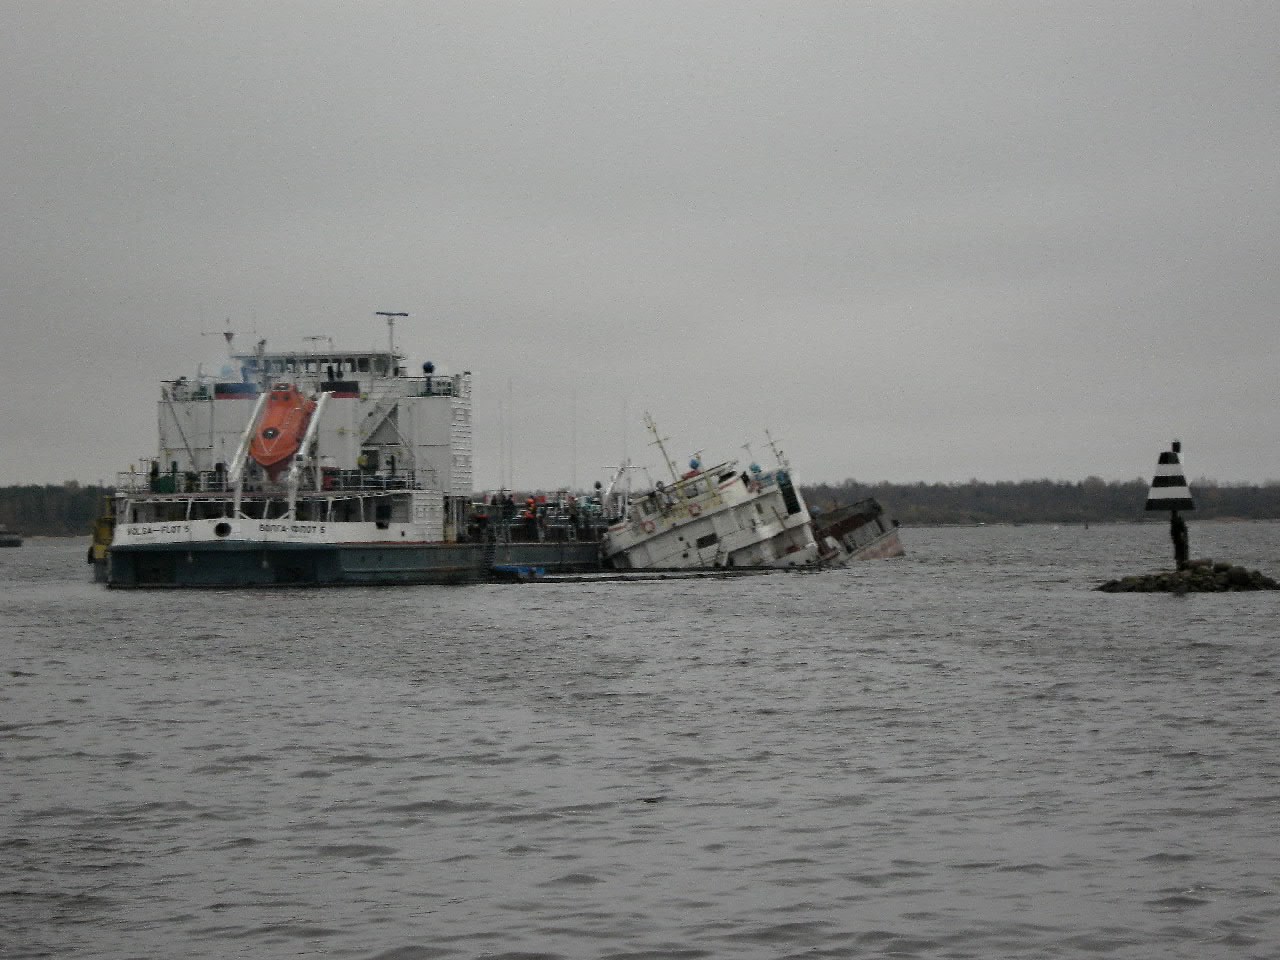 Волга-Флот 5, Окский-62. Incidents